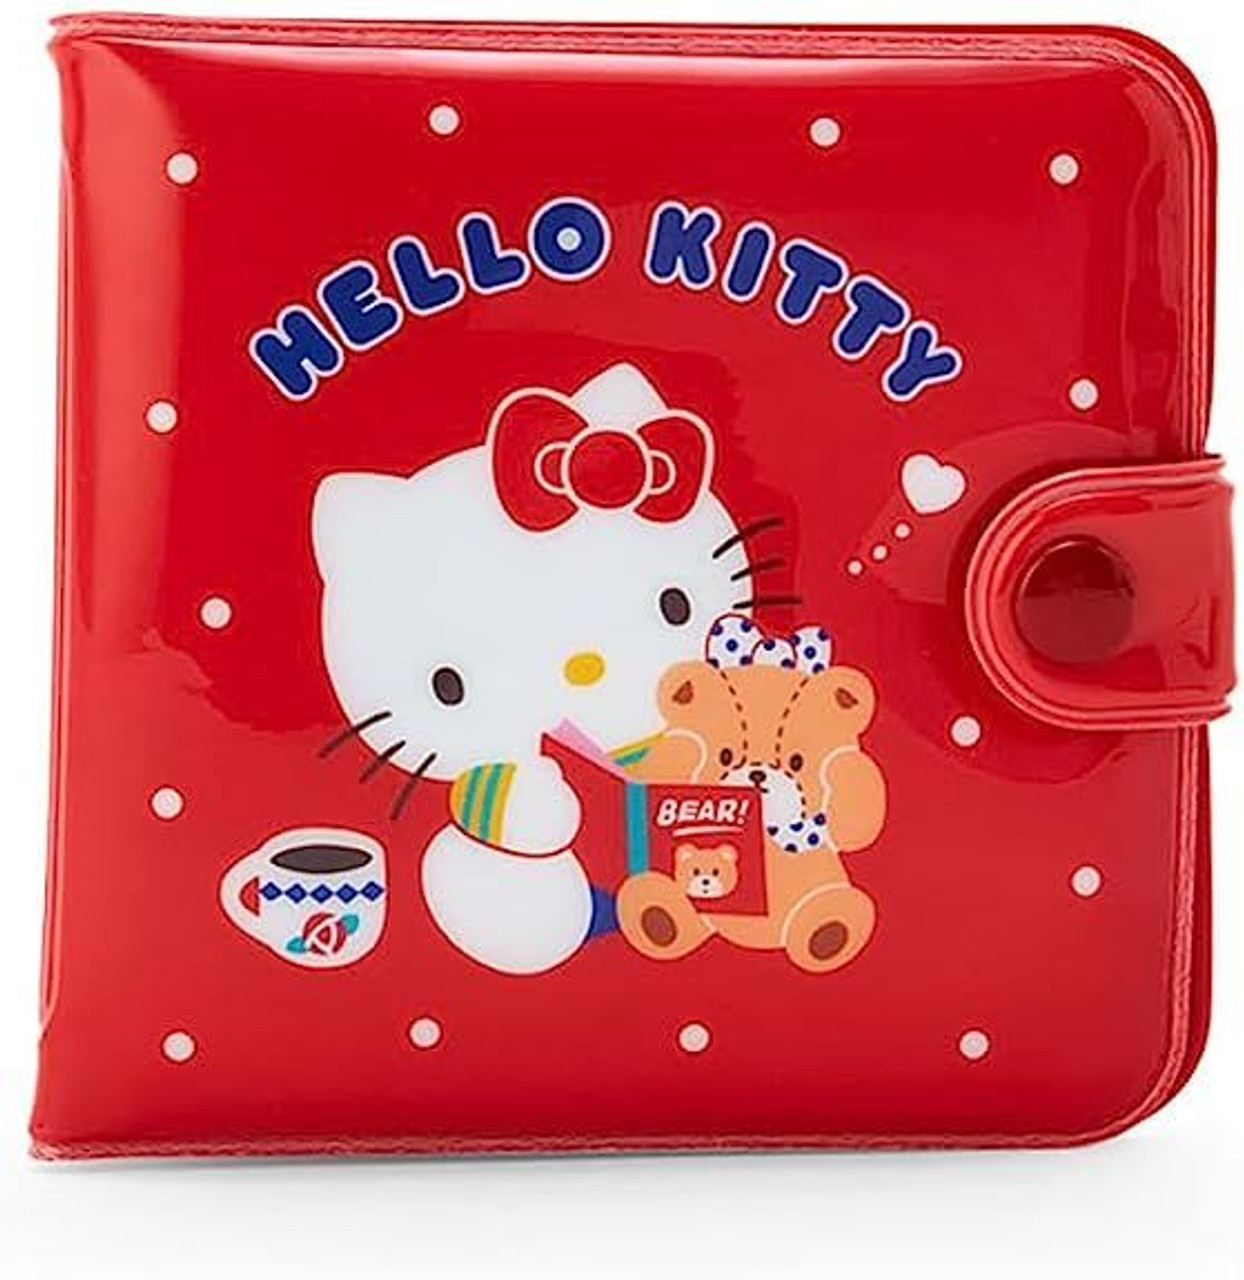 Sanrio Vinyl Wallet - Hello Kitty